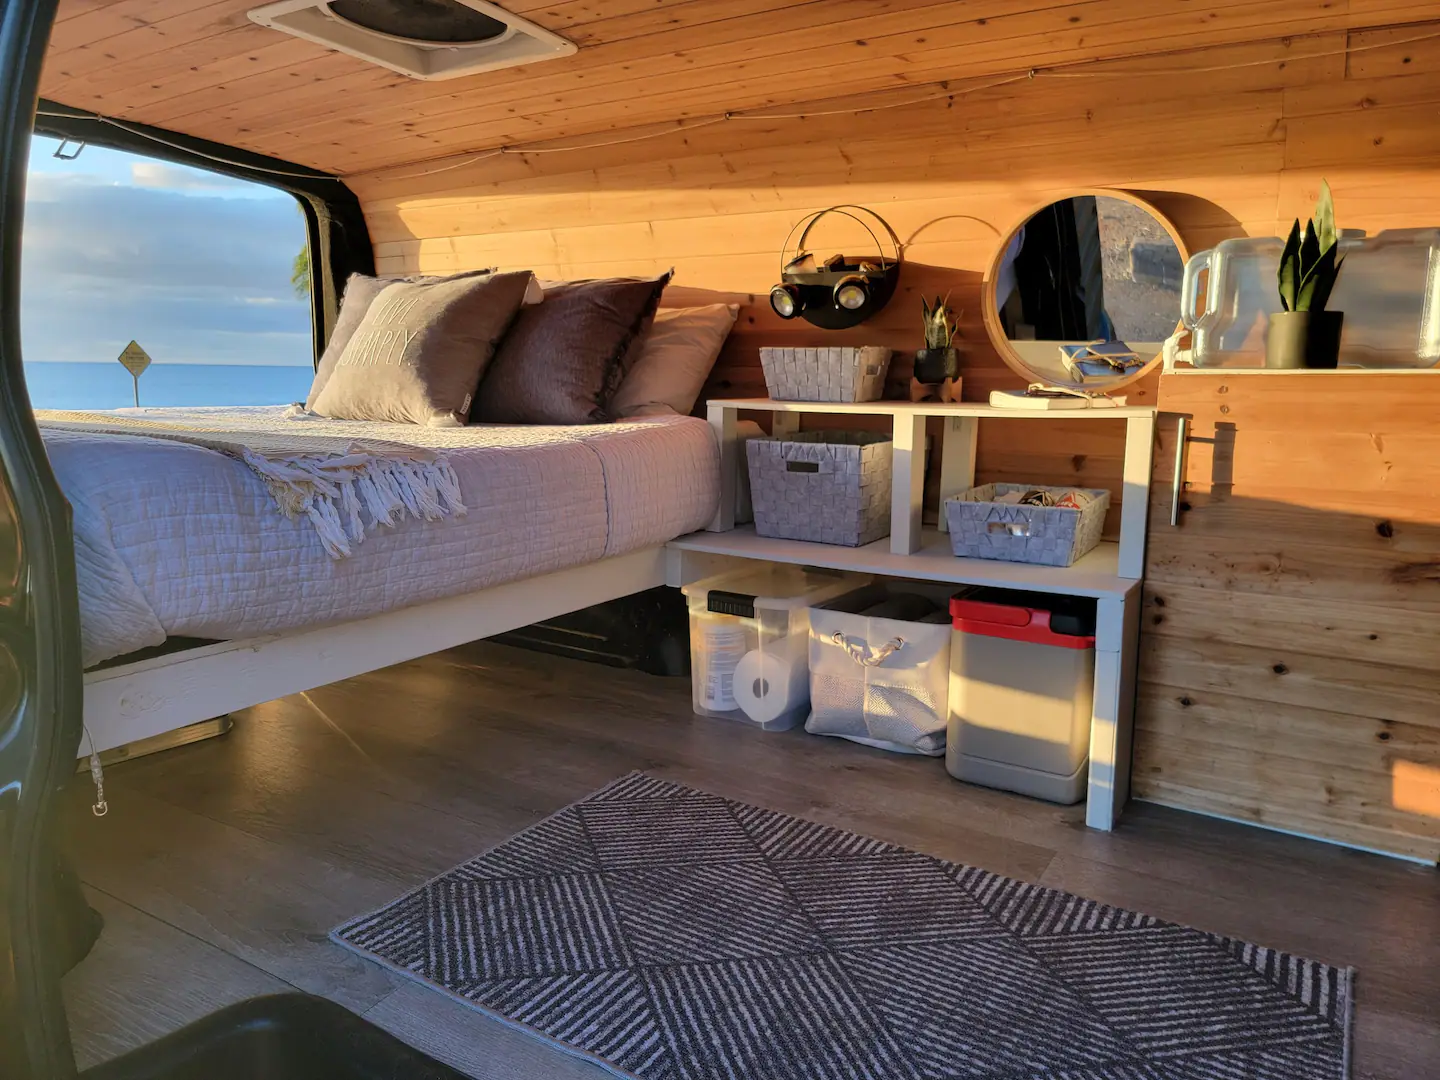 Hawaiian Rockstar Beach Van, one of Oahu's best Airbnbs